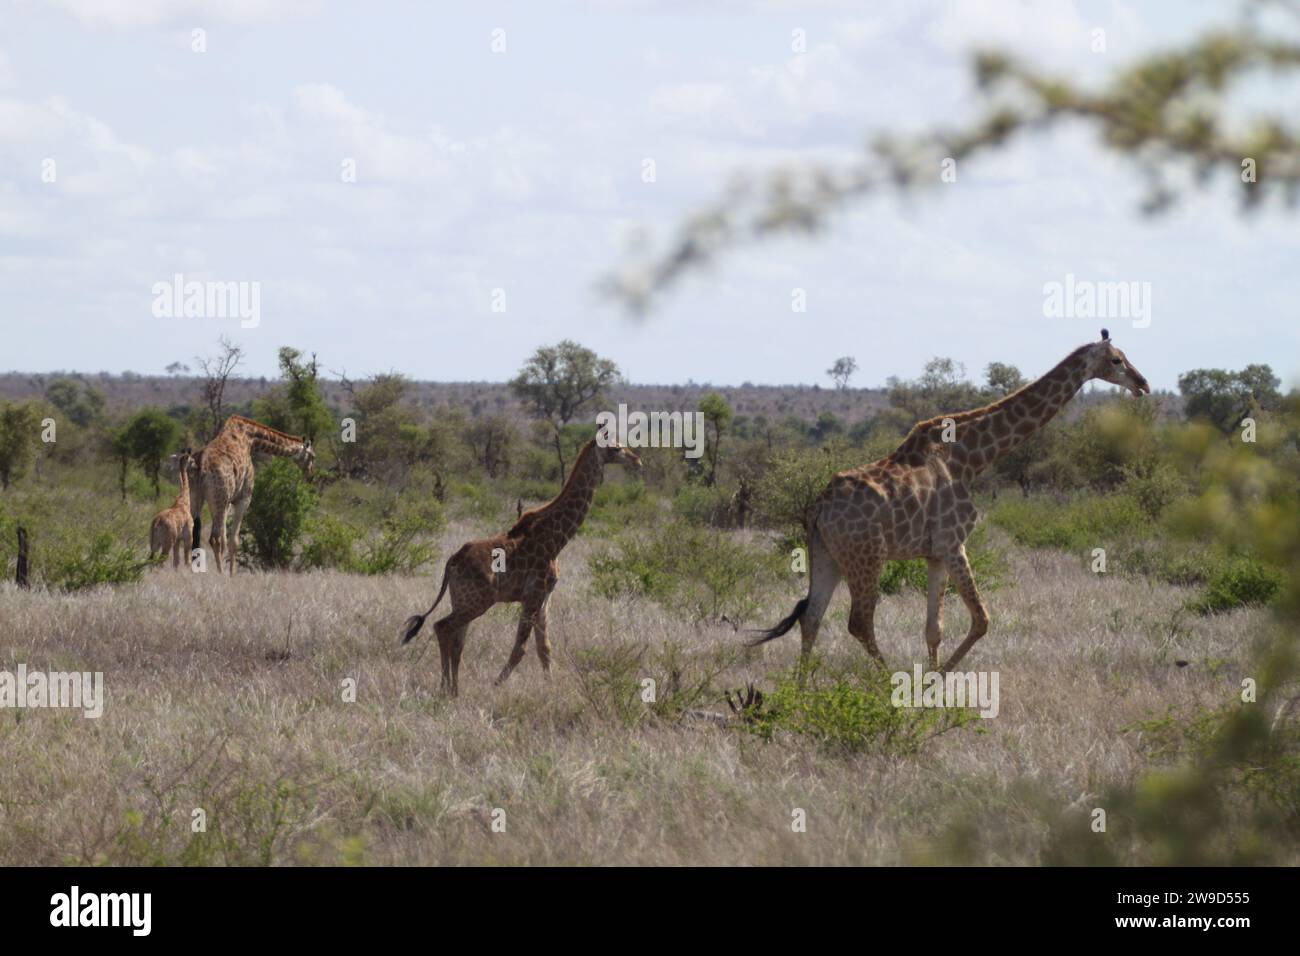 Les deux girafes courent dans un magnifique paysage de savane. Banque D'Images